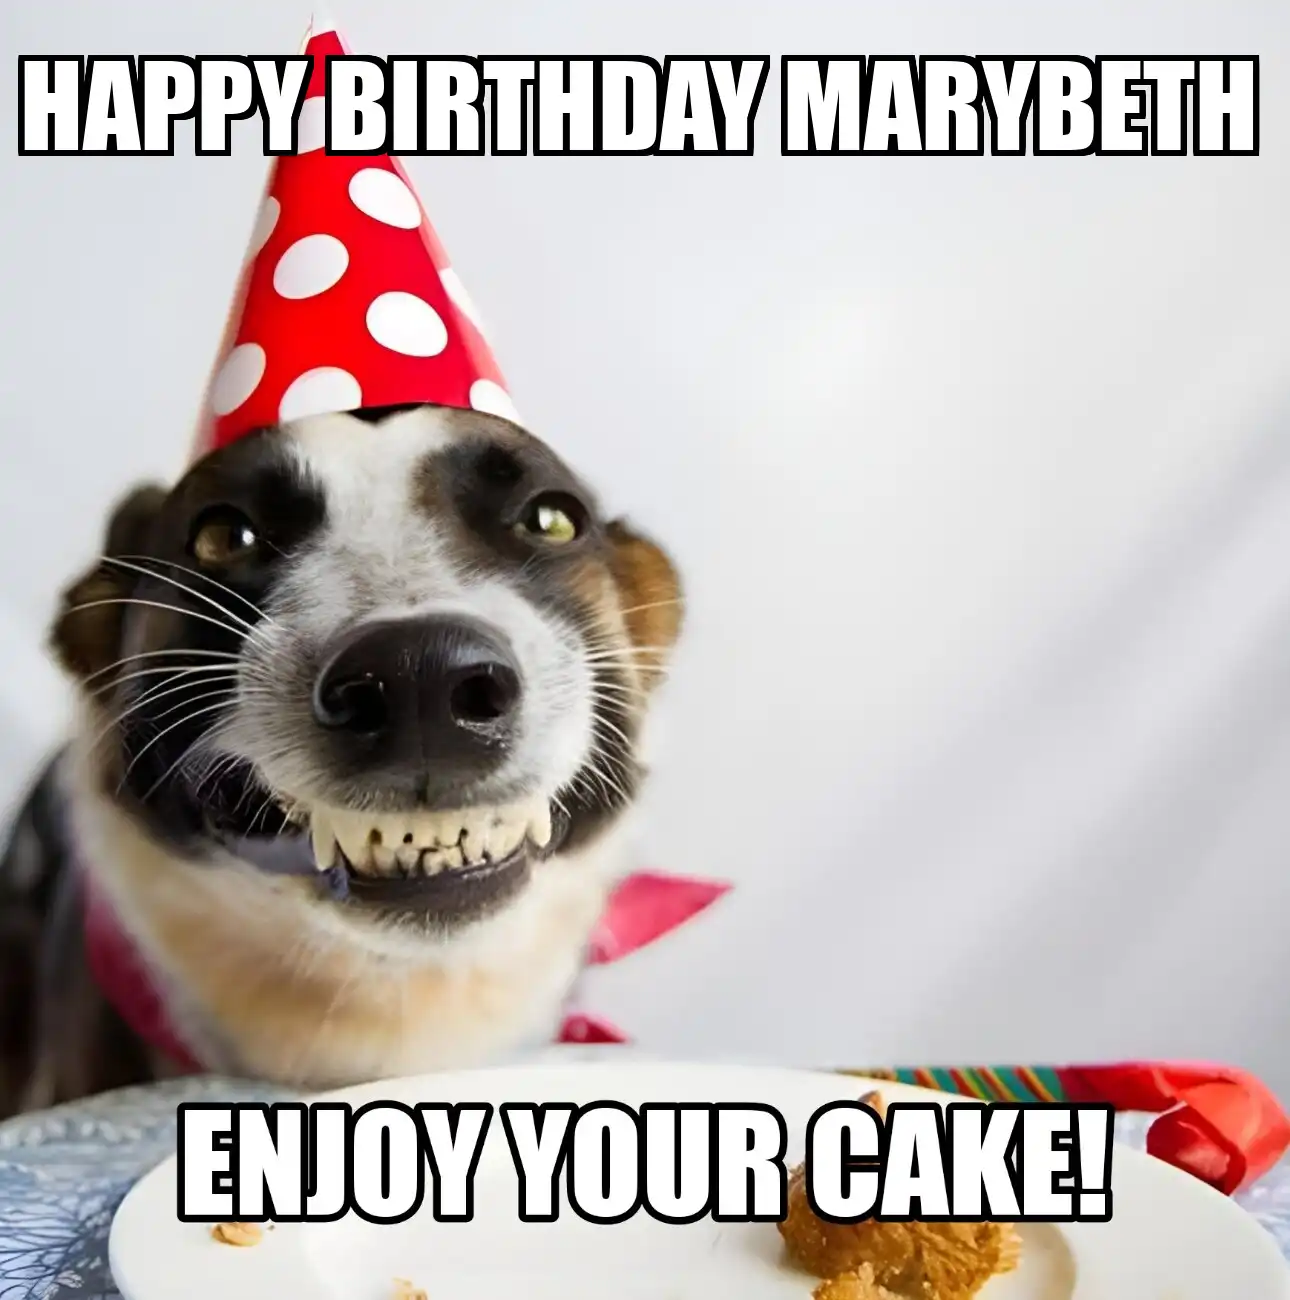 Happy Birthday Marybeth Enjoy Your Cake Dog Meme